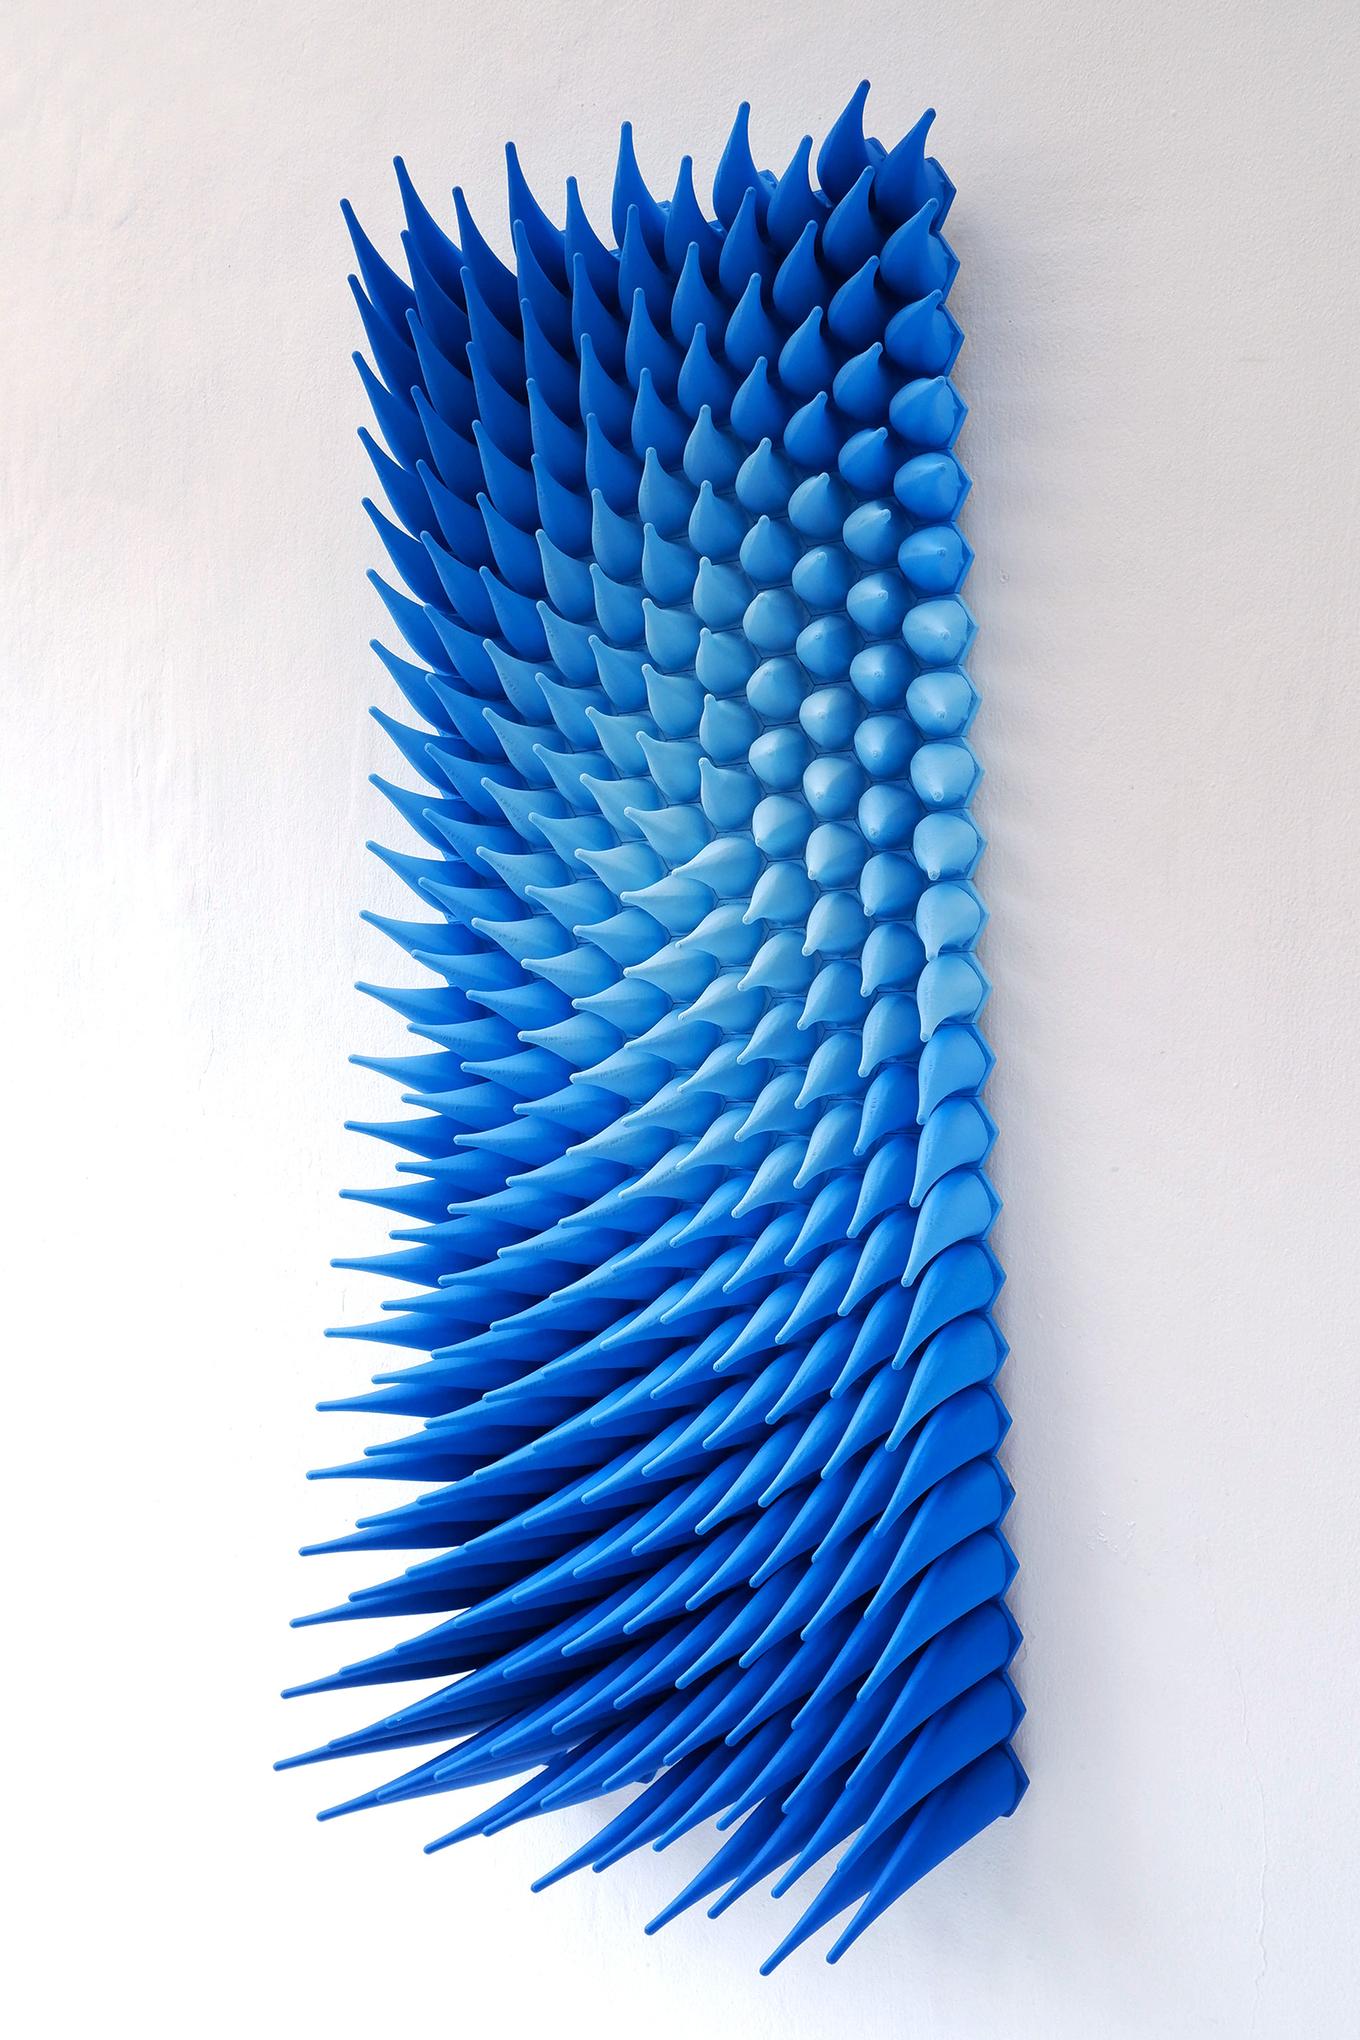 Wisp | Herschel Shapiro | Modern Dimensional 3D Wall Art Mosaic 